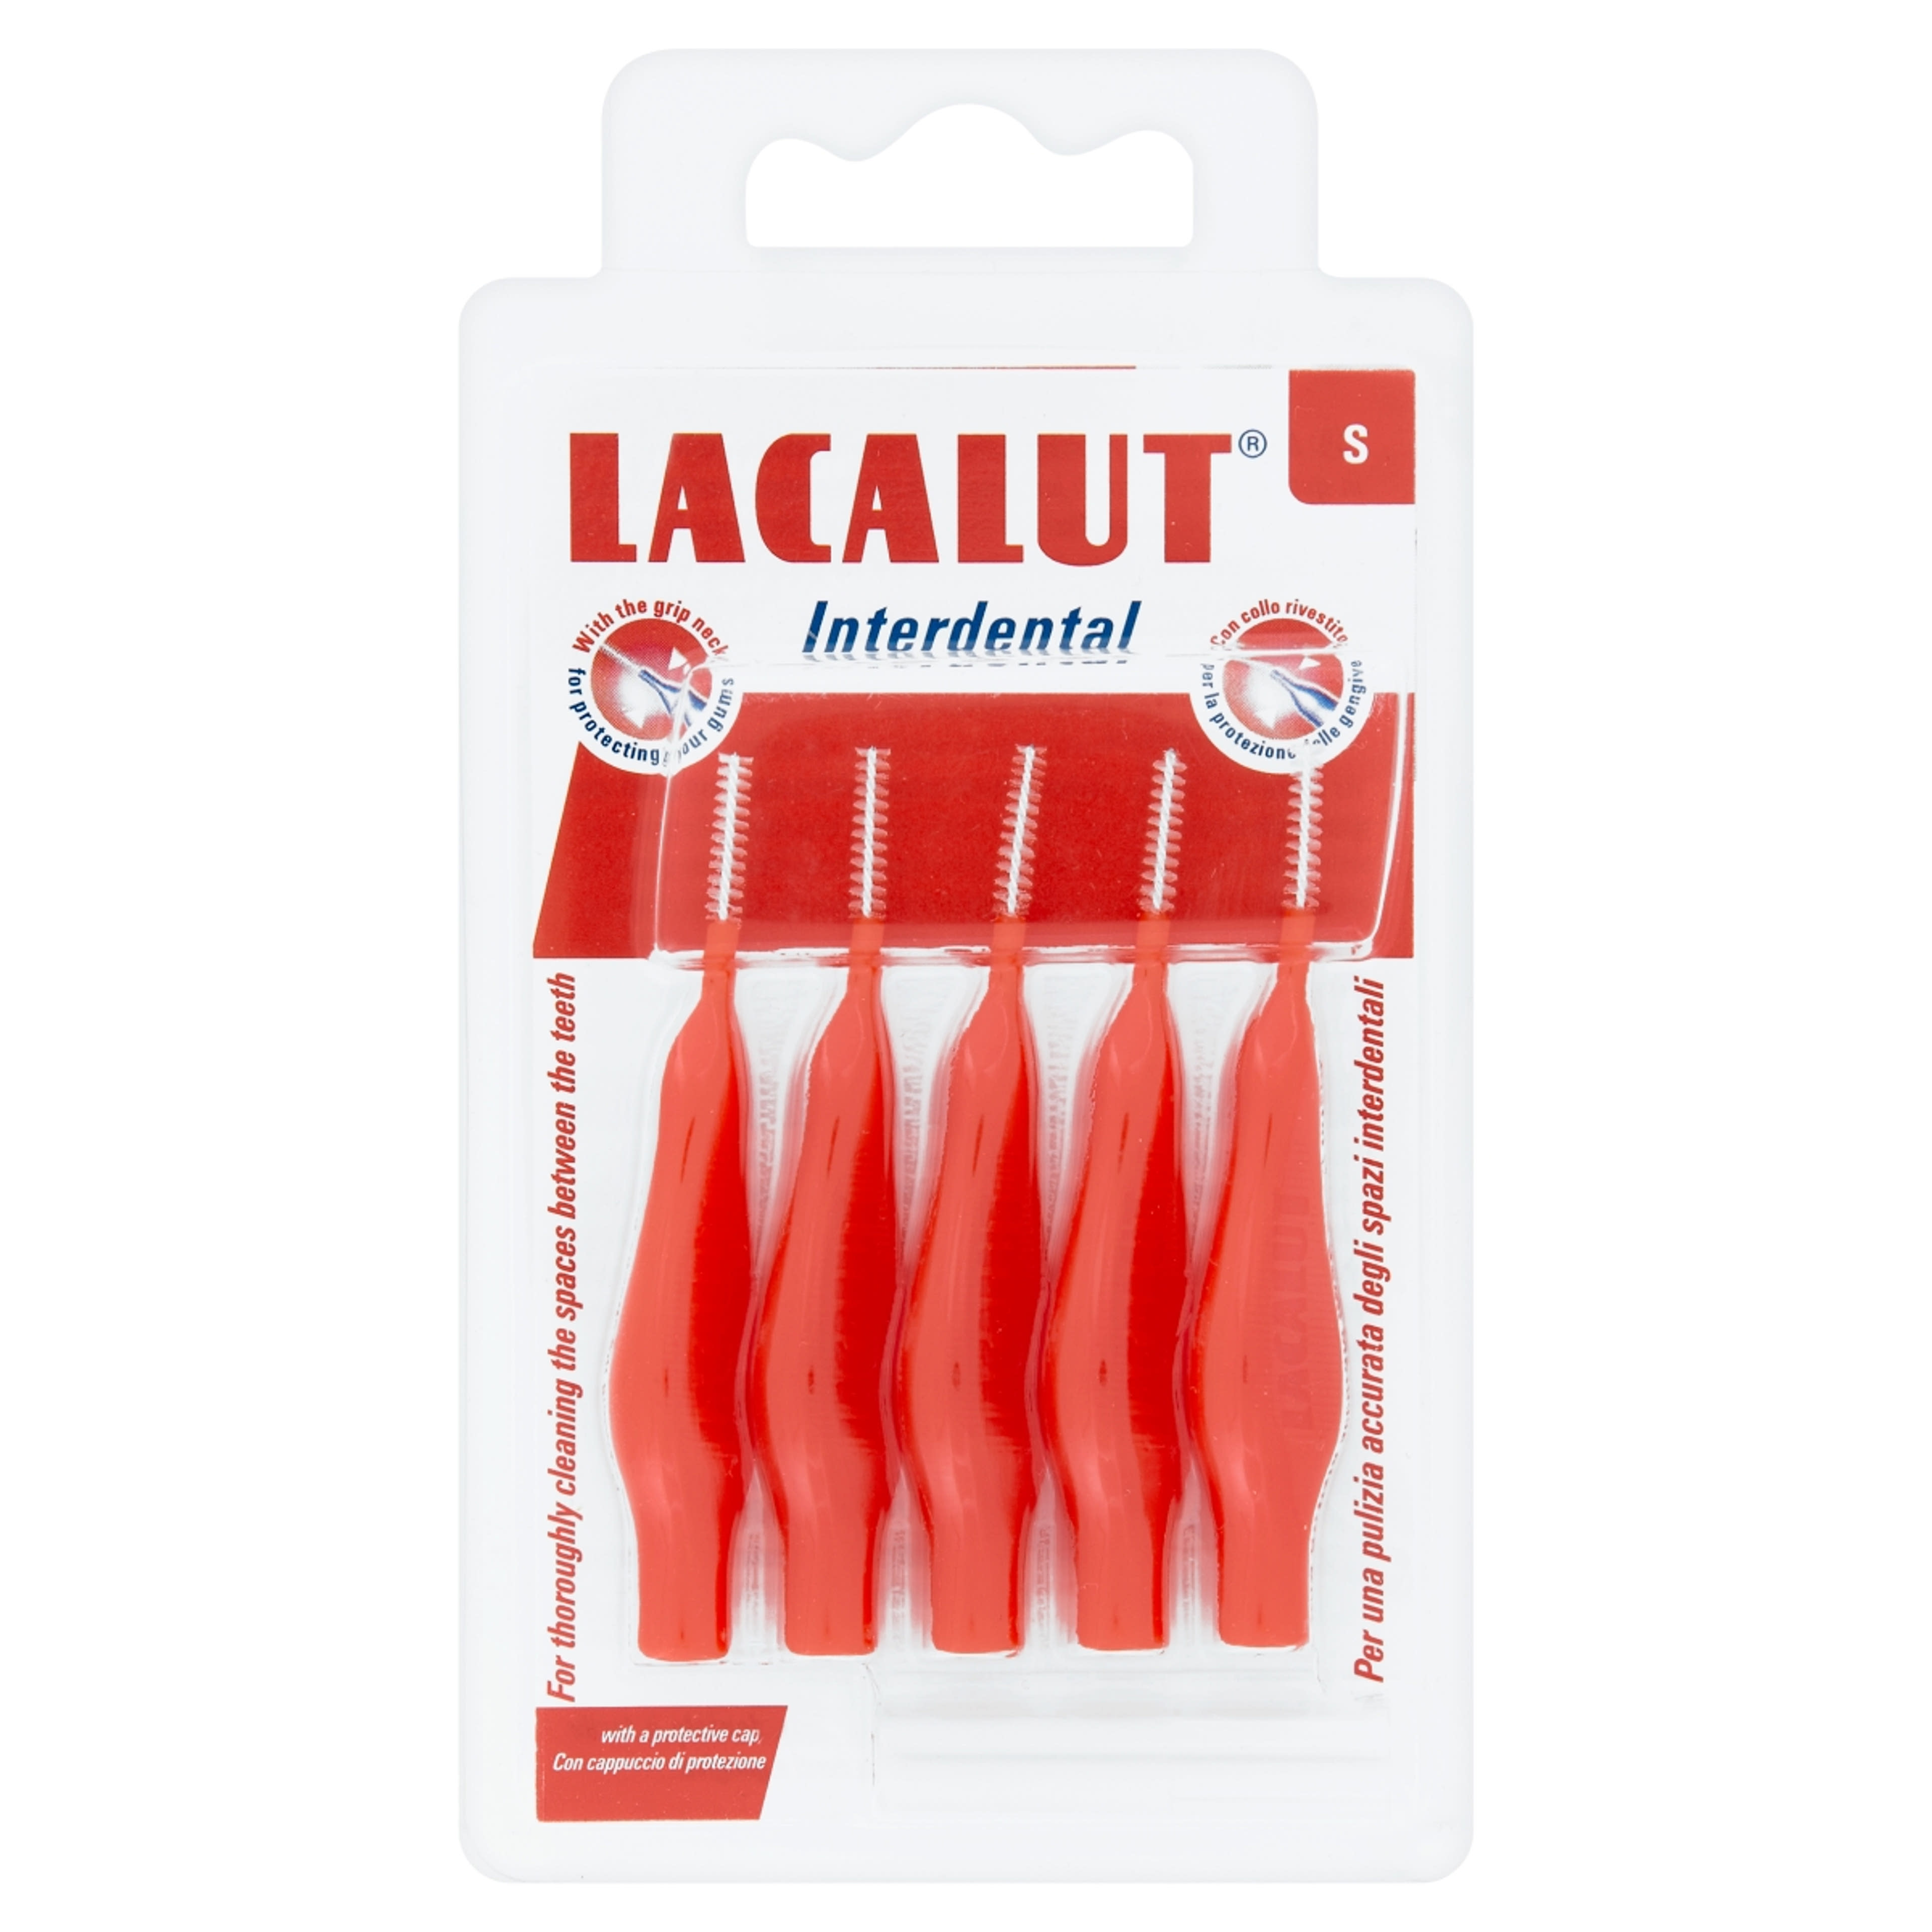 Lacalut Interdental S fogköztisztító kefe védokupakkal - 5 db